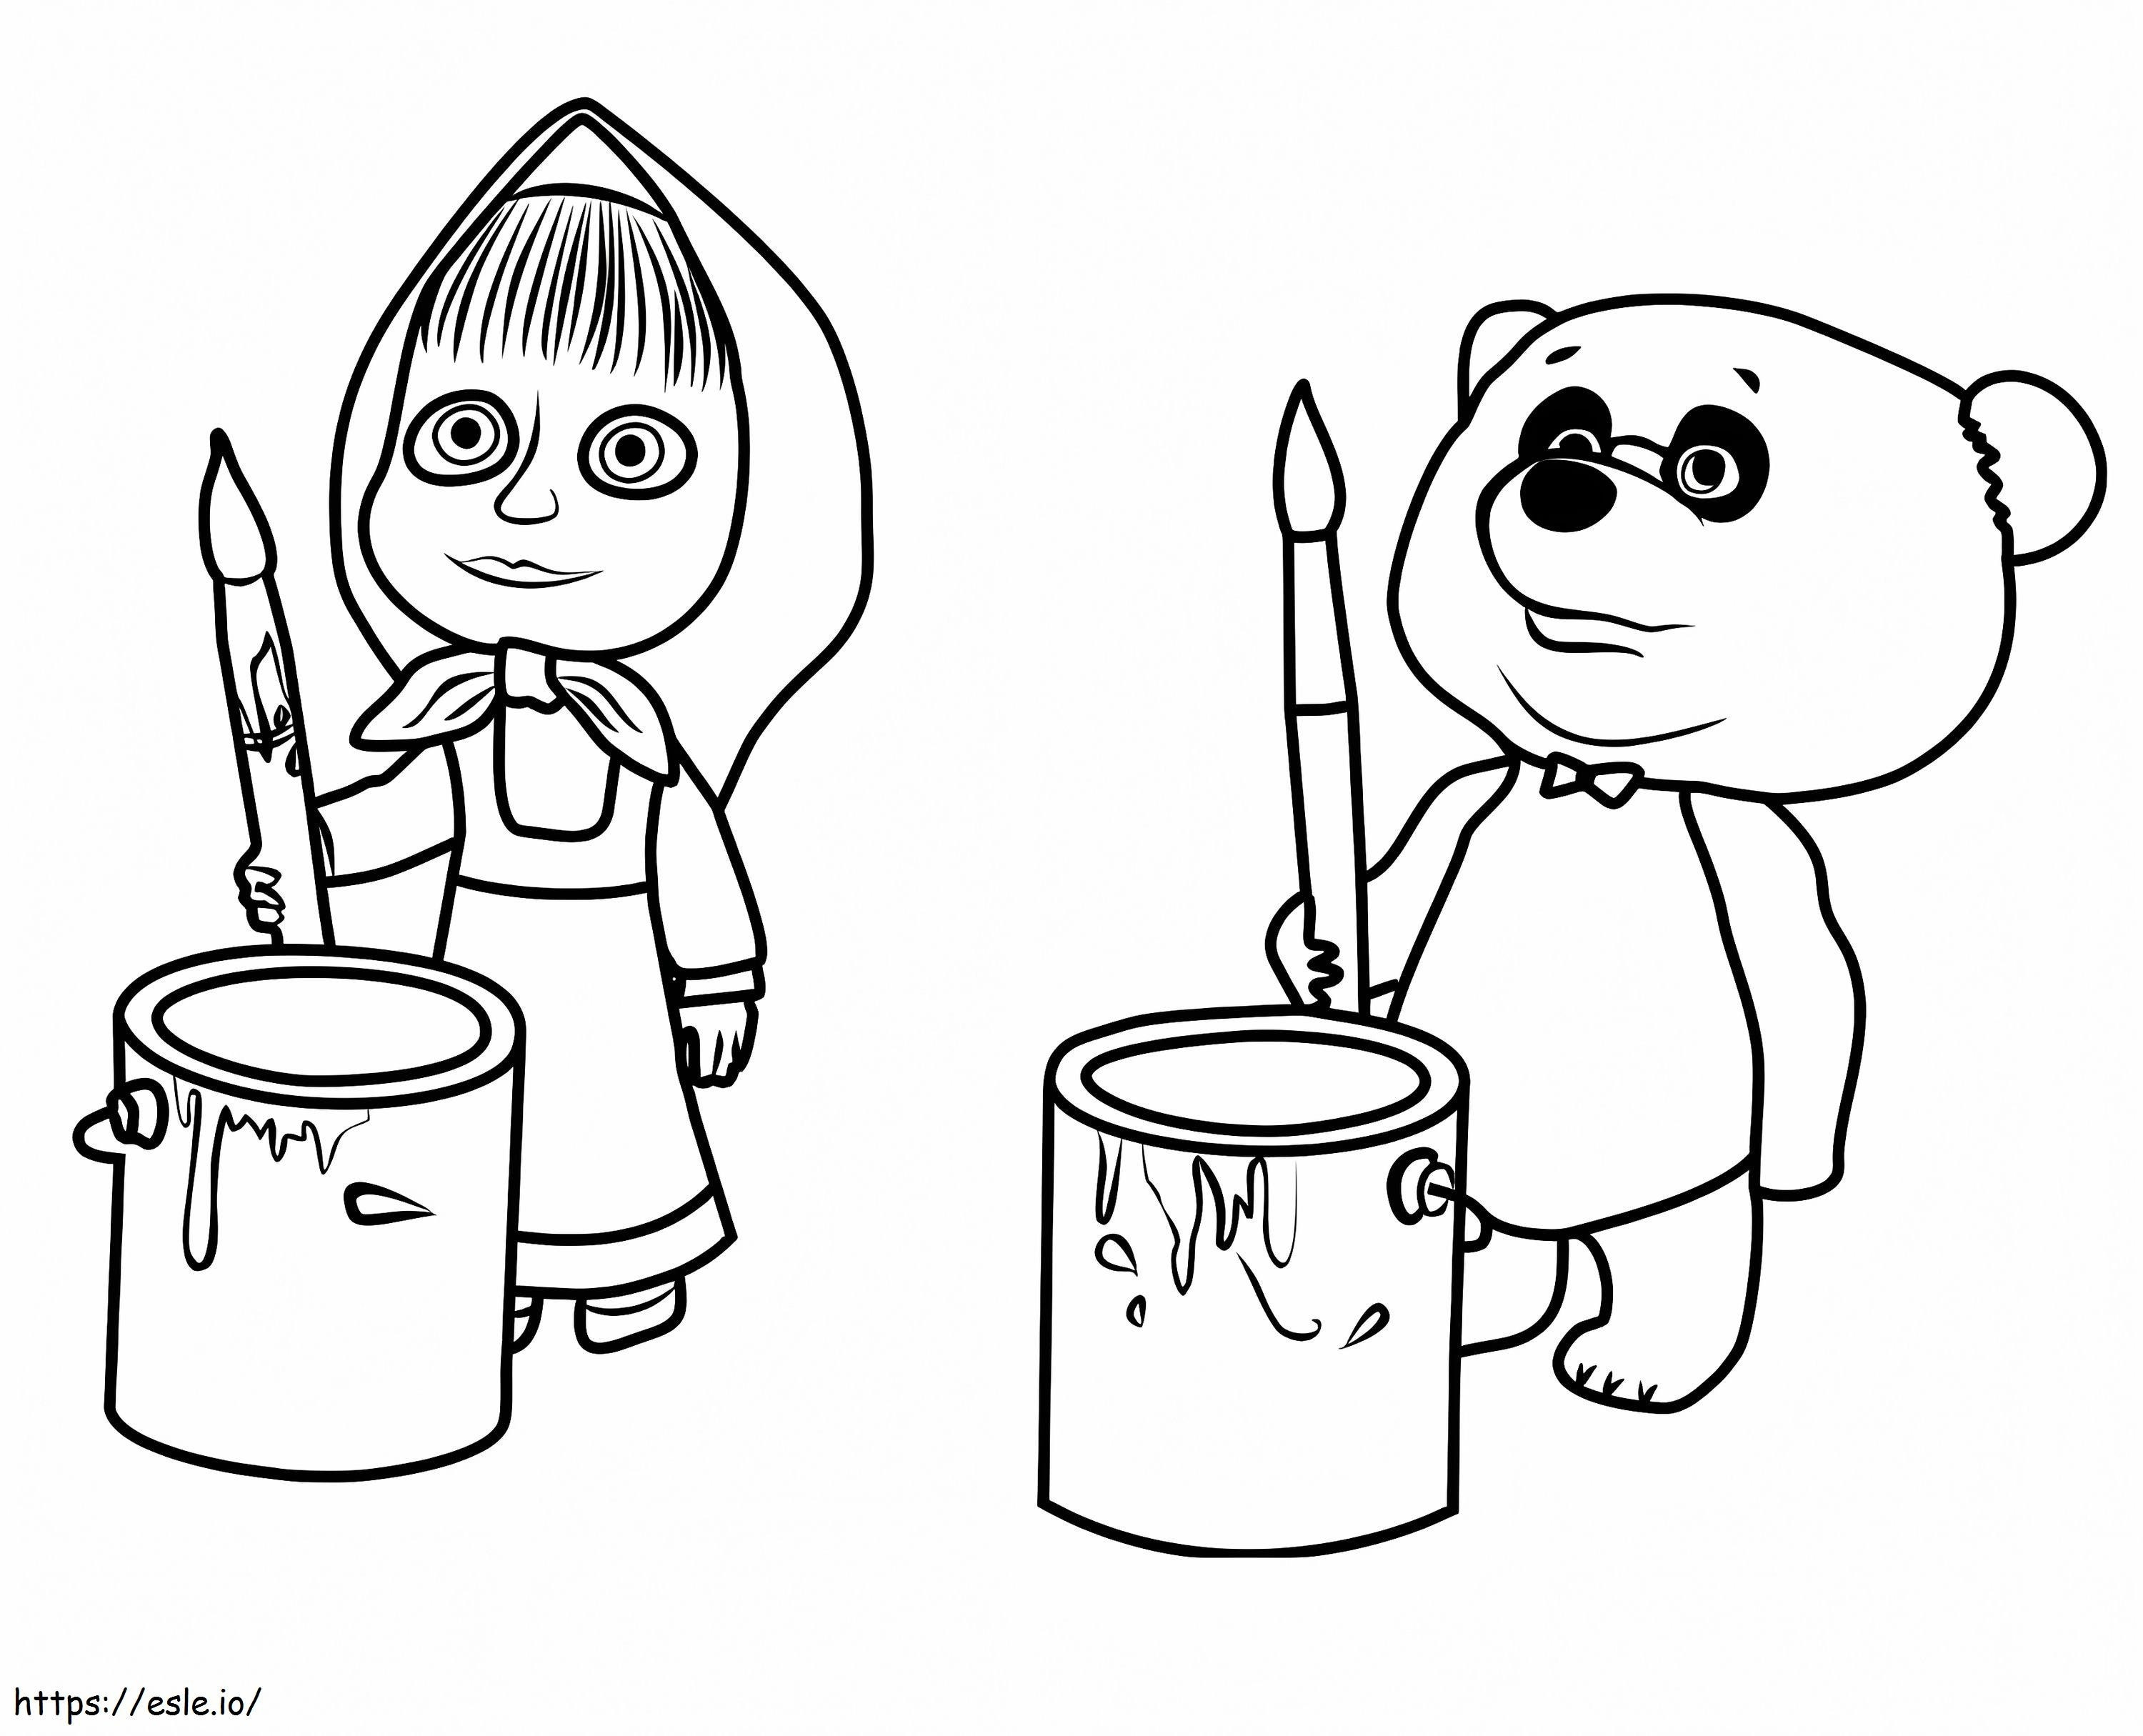 Masha And Panda coloring page